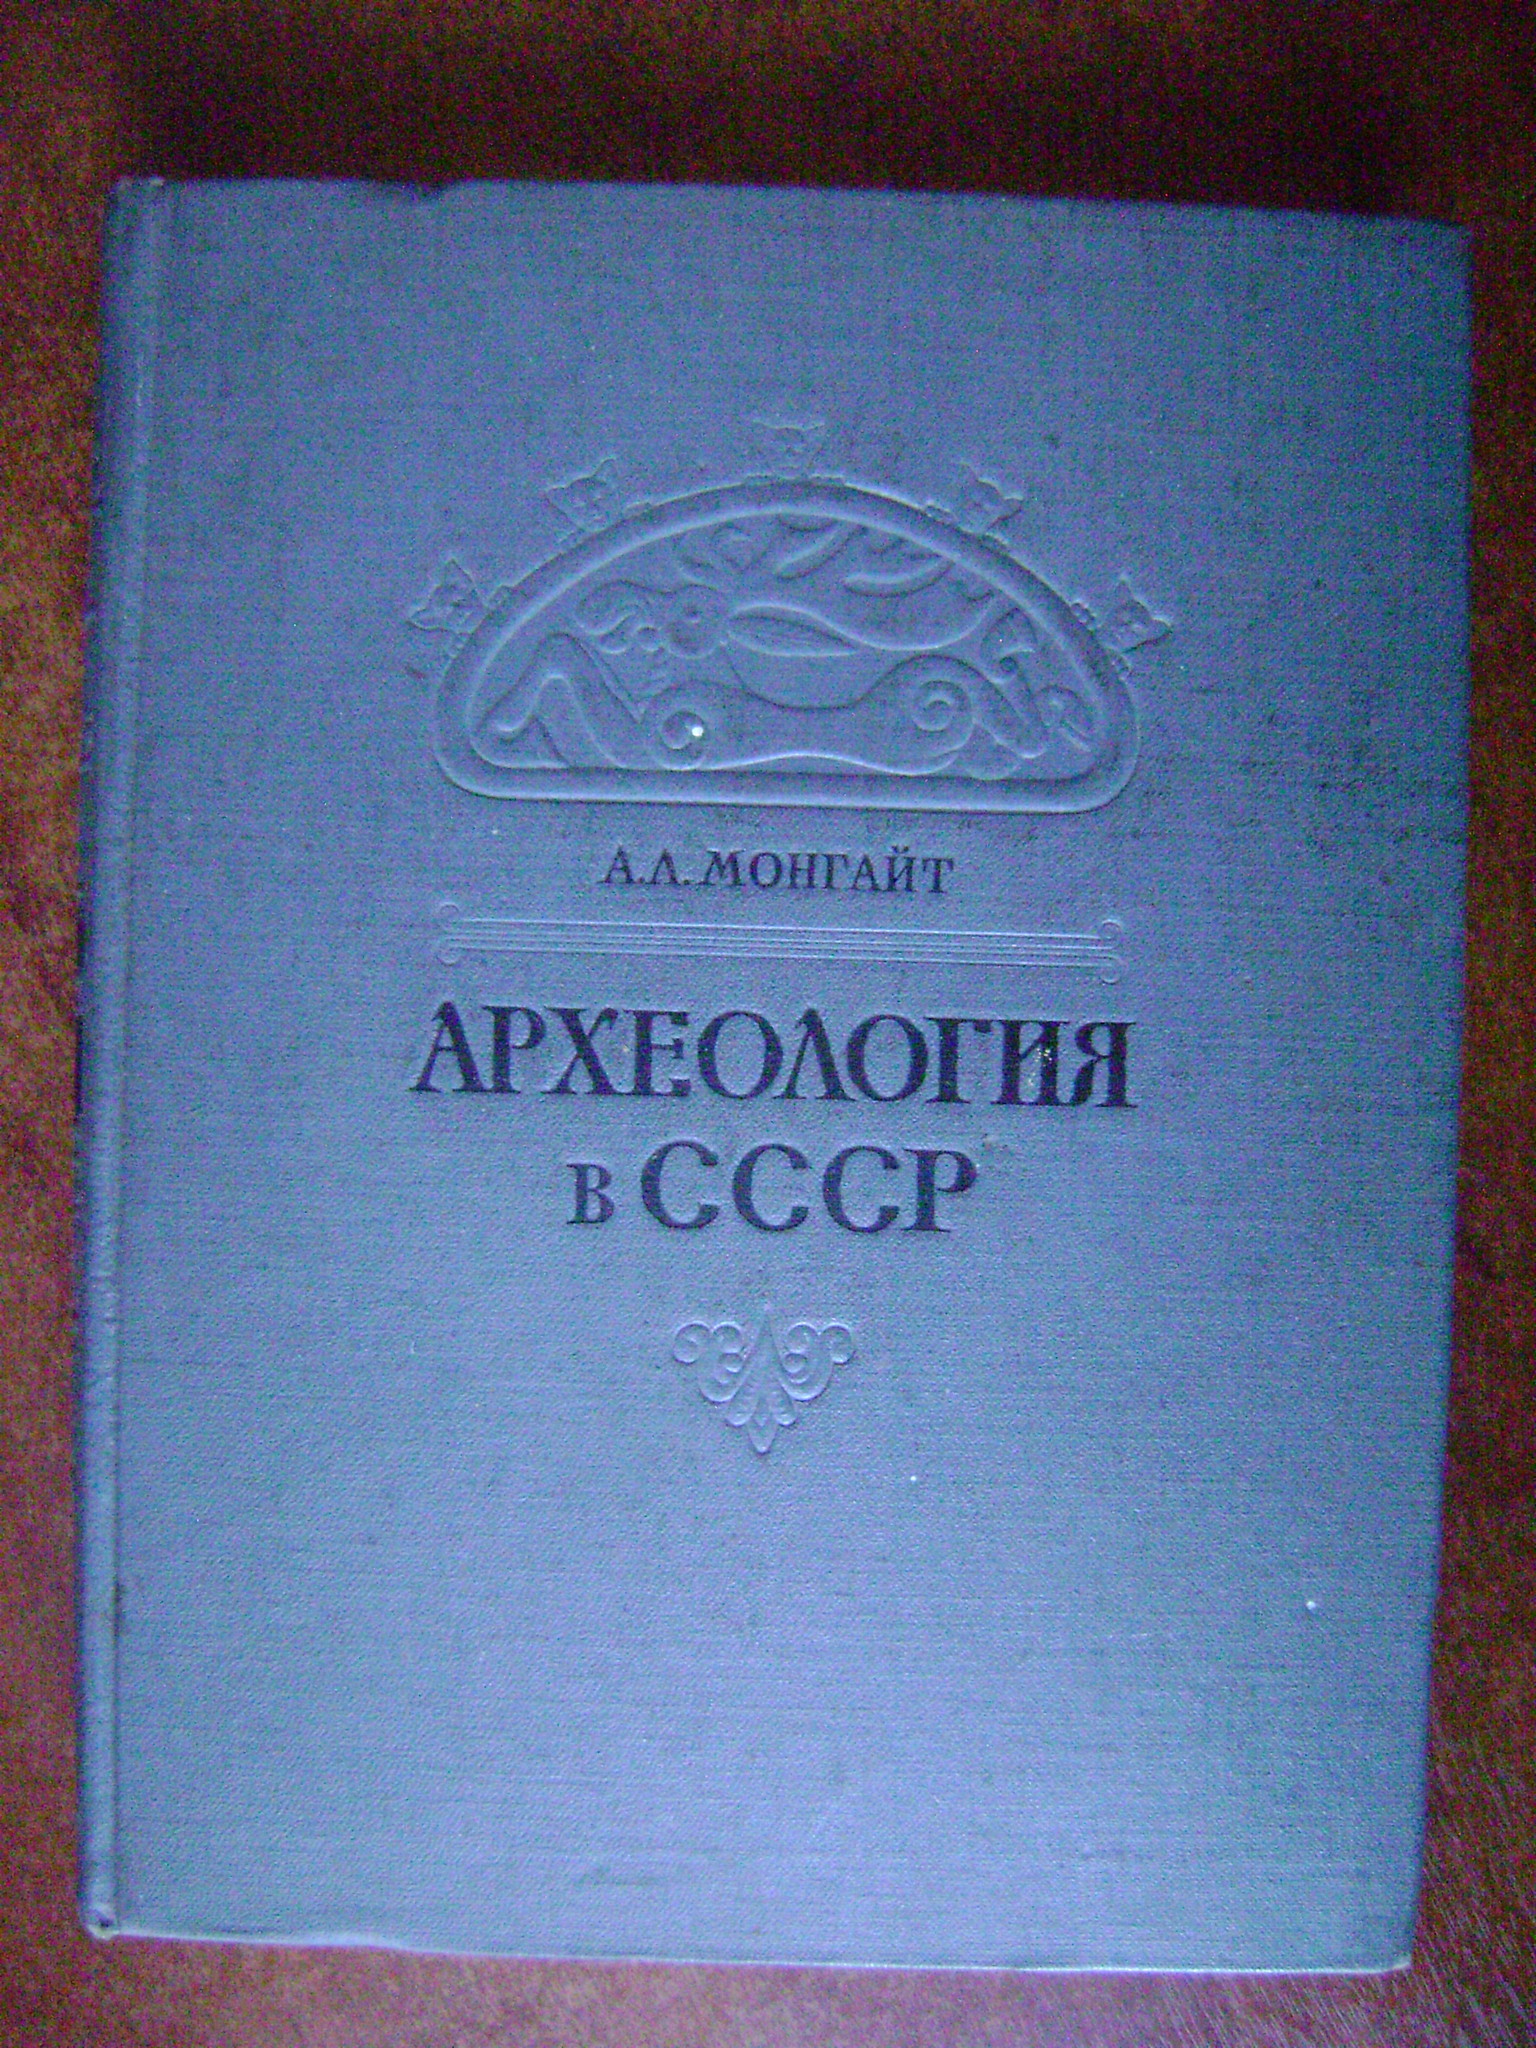 Монгайт А.Л. Археология в СССР